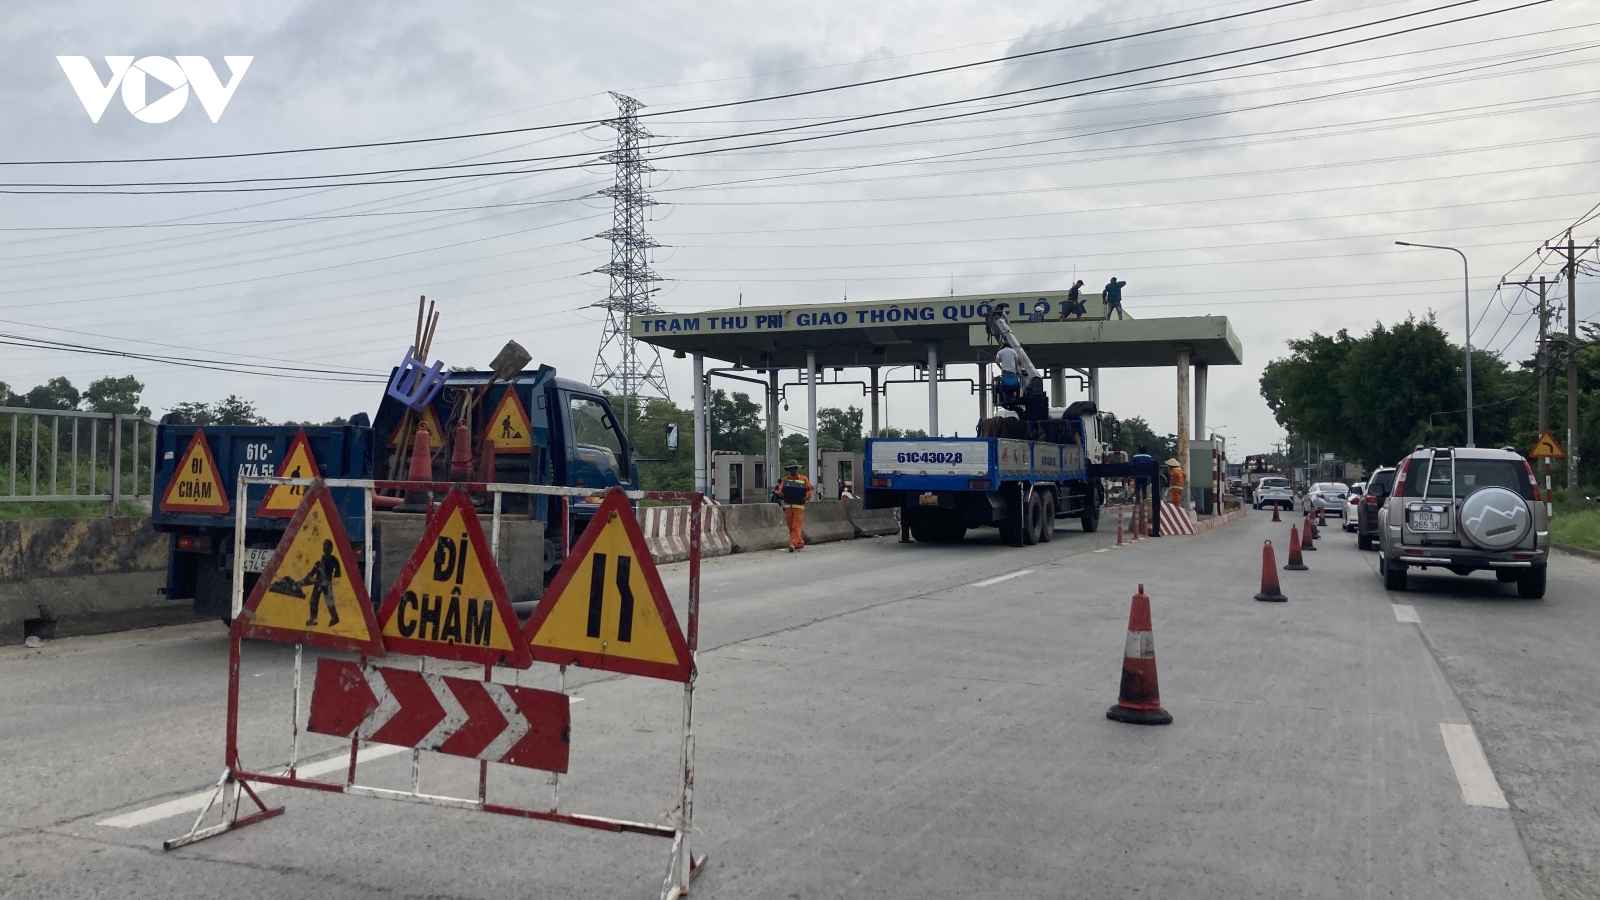 Đồng Nai tháo dỡ trạm thu phí bỏ không nhiều năm trên Quốc lộ 1K